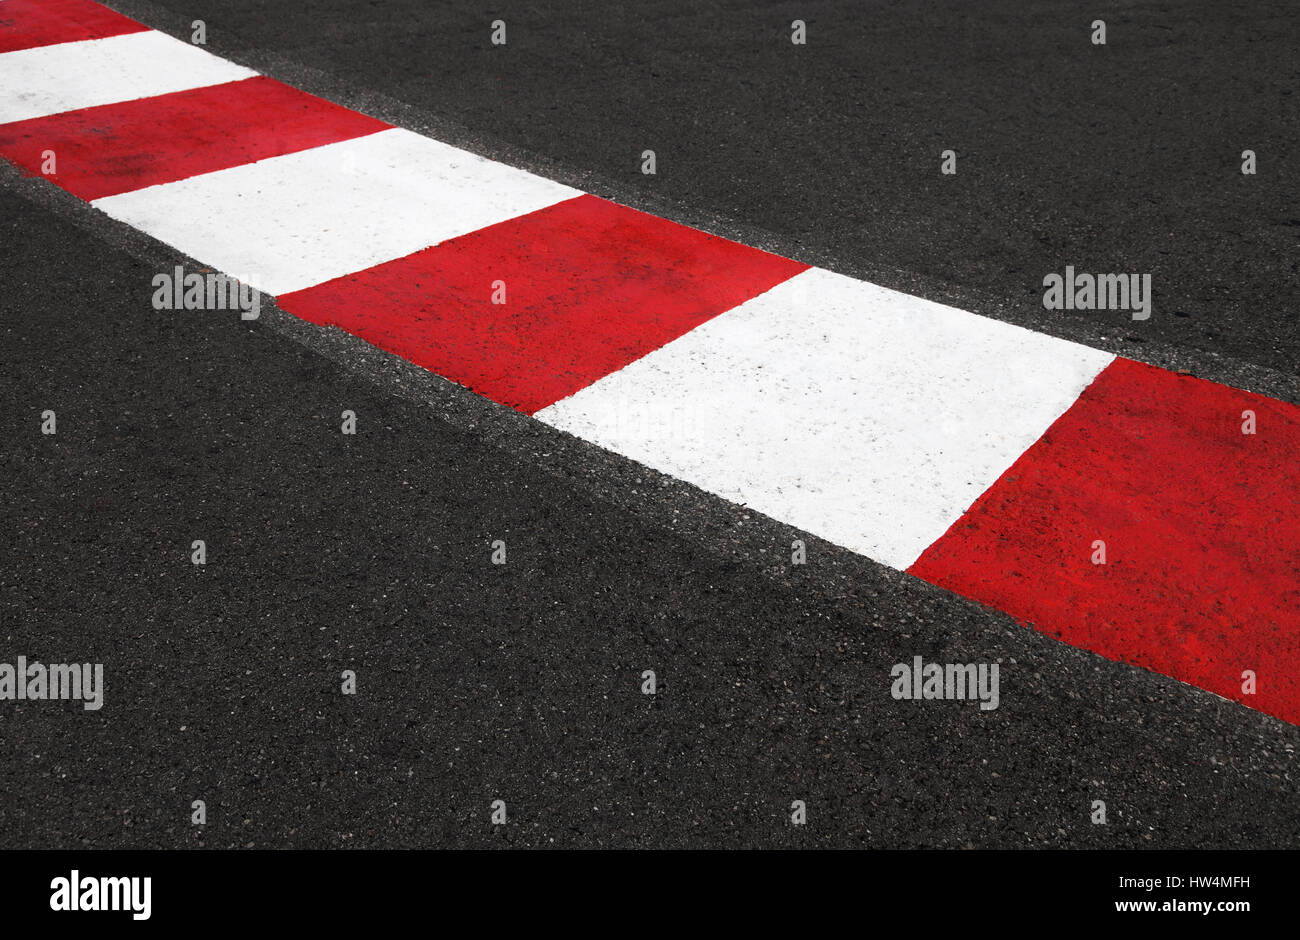 Textur von Autorennen Asphalt und rot weiße Bordstein. Grand Prix von Monaco Monte Carlo Stadtkurs hautnah Stockfoto